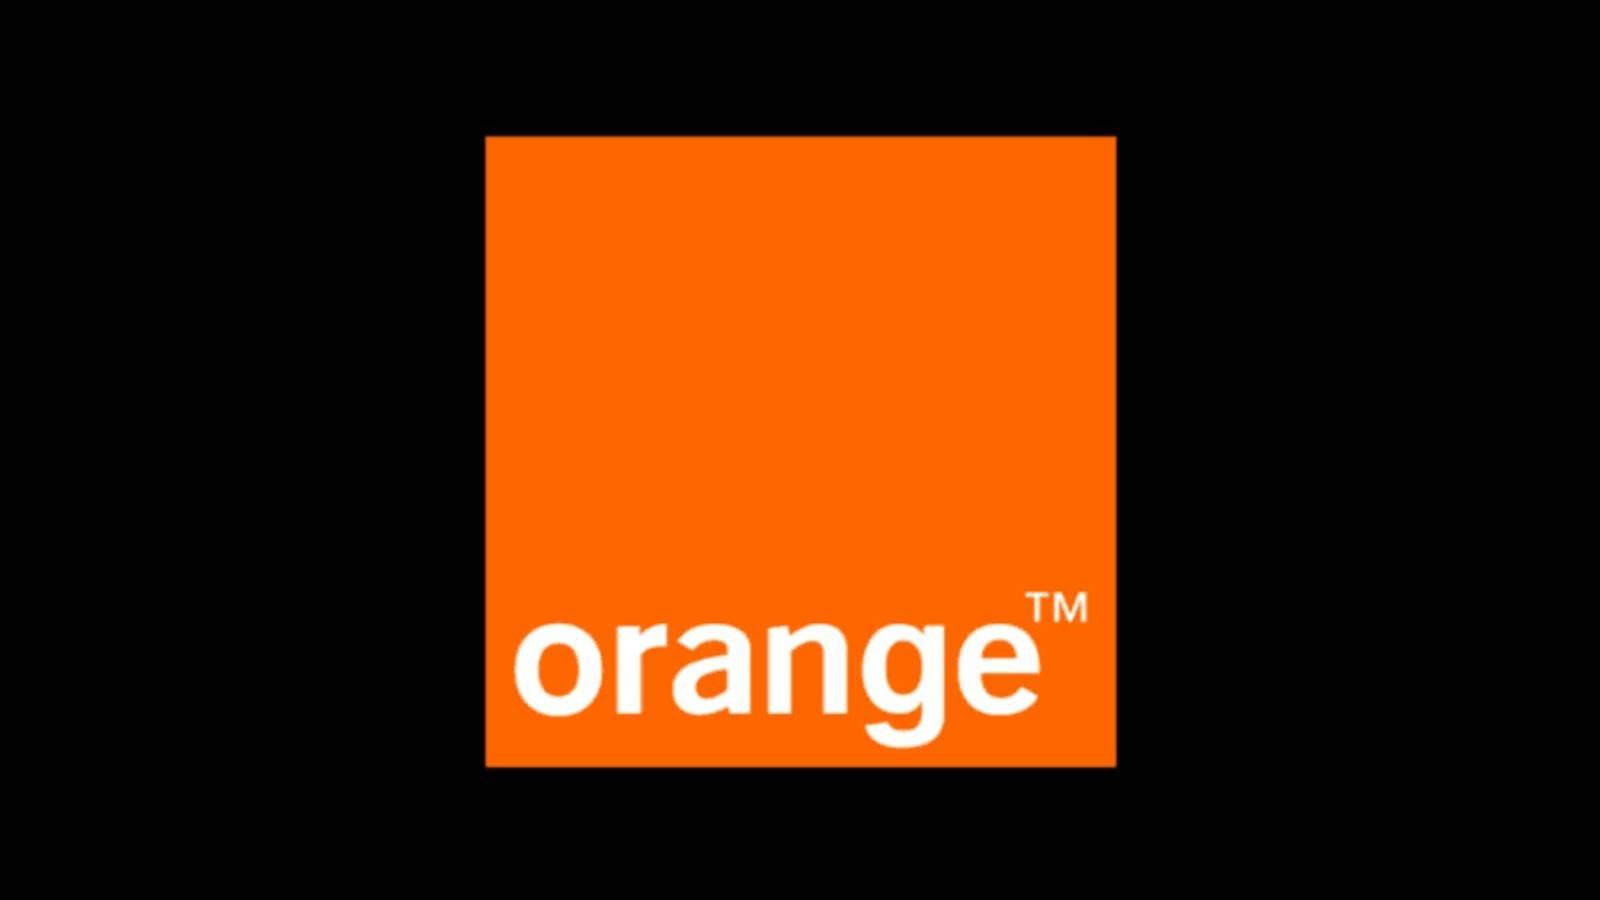 Orange giver dig 1.000 euro feriekuponer Vilkår og betingelser